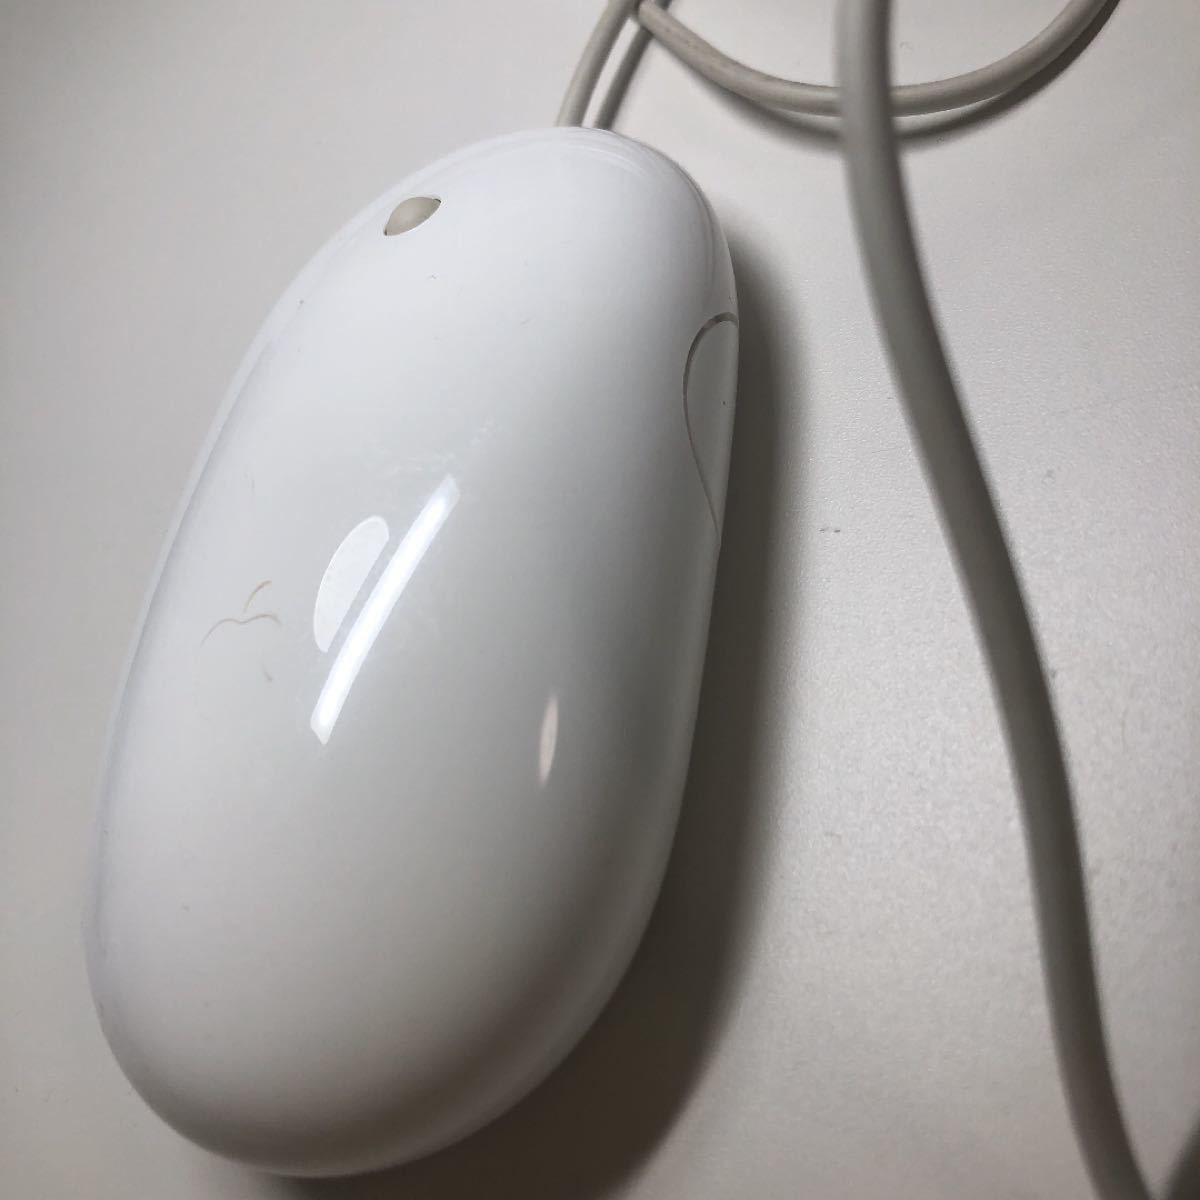 ★apple 純正 有線USBマウス A1152 中古動作品 Apple Mighty Mouse Mac マイティマウス